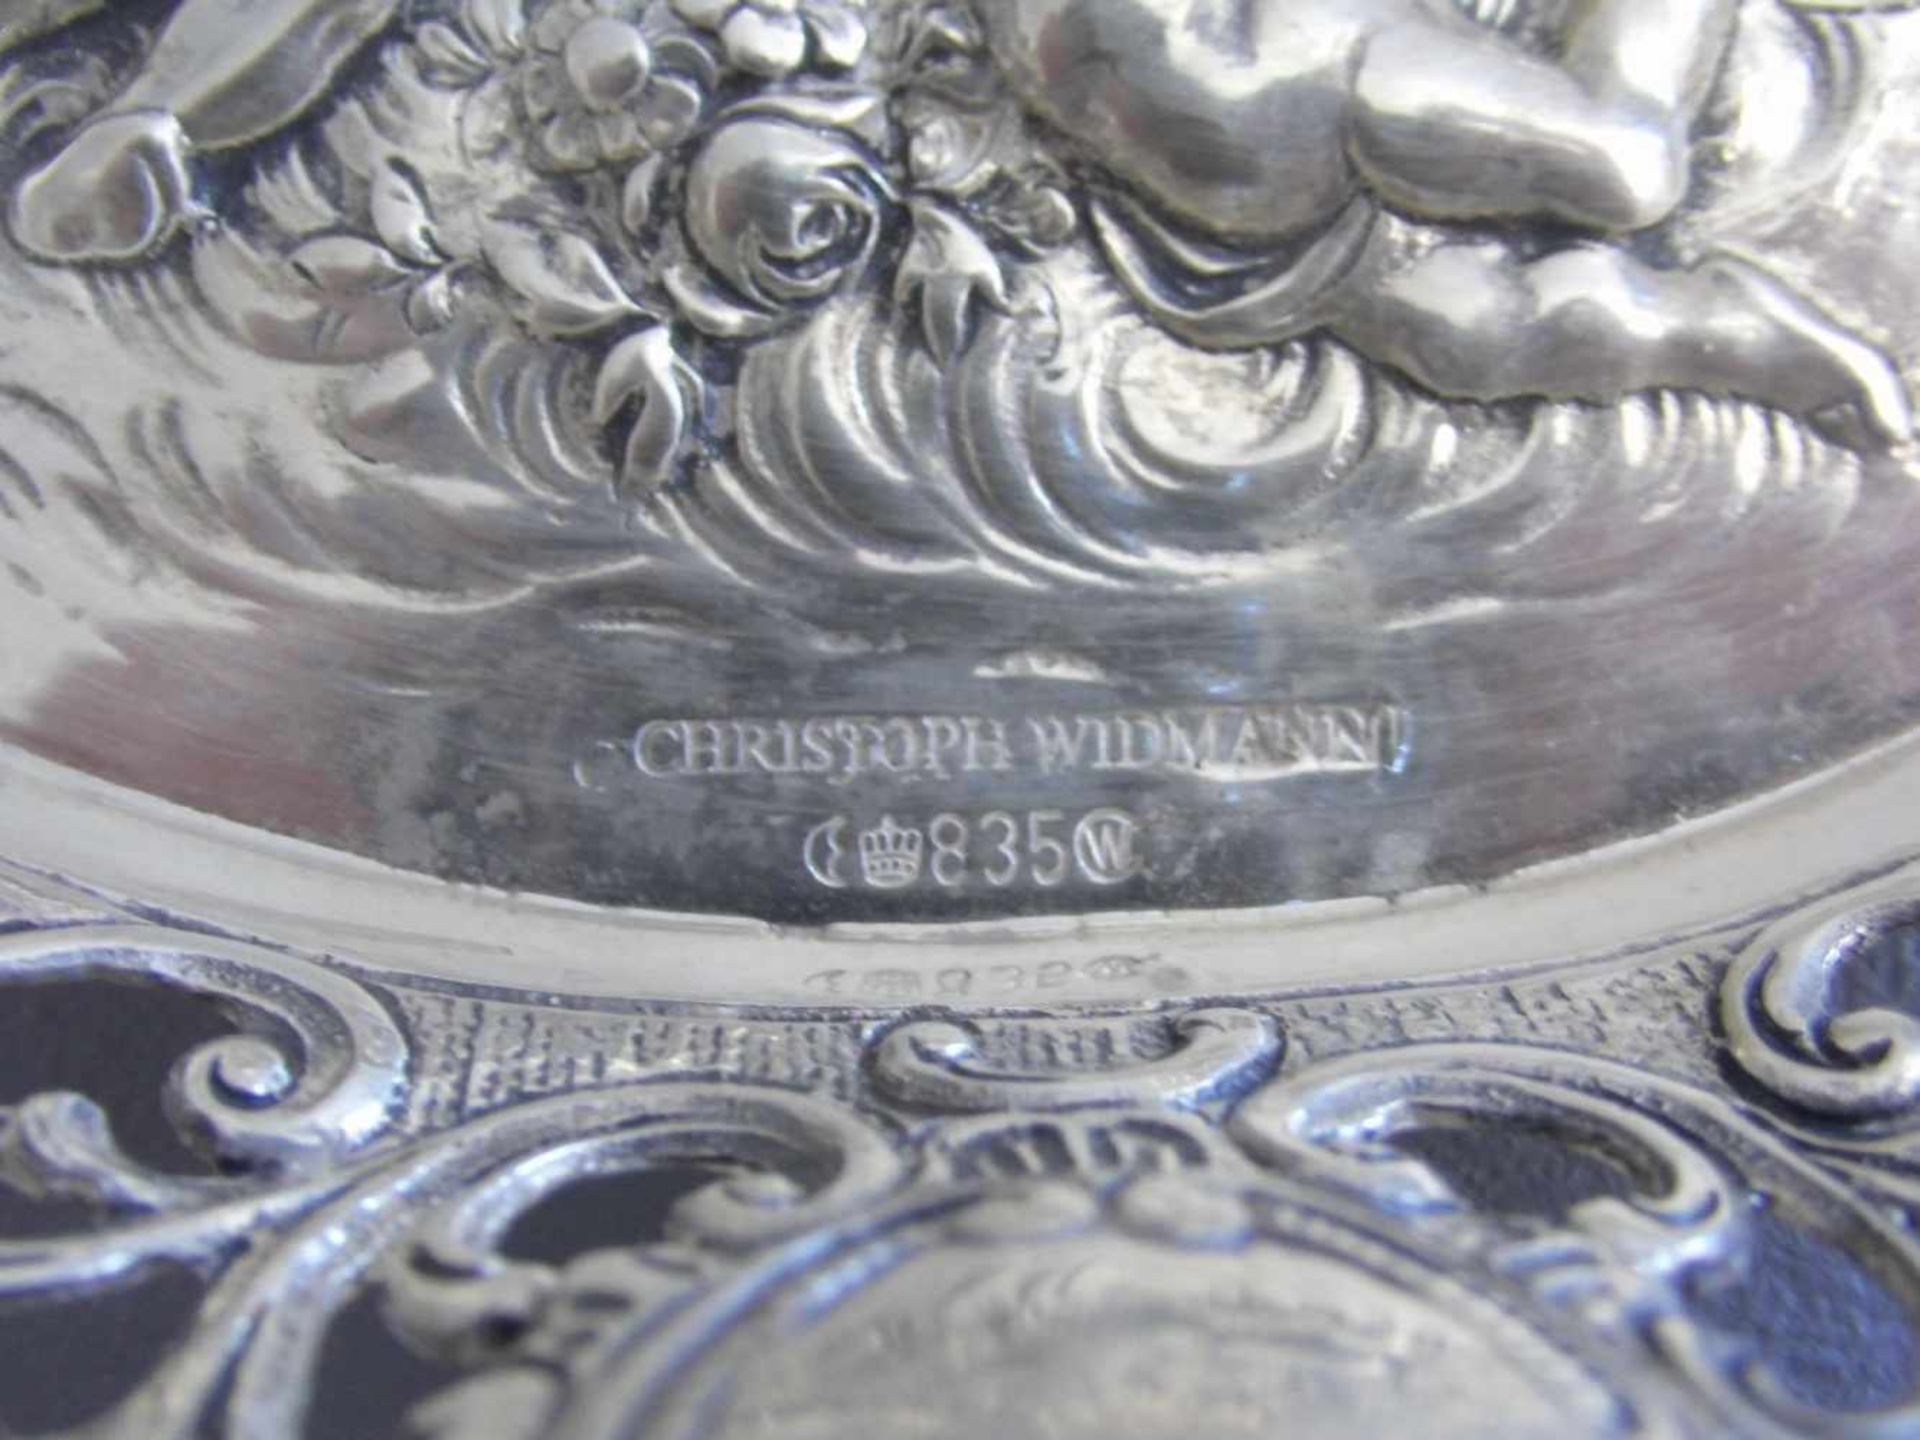 SILBERNE KORBSCHALE MIT AMORETTEN, 835er Silber (180 g), gepunzt mit Halbmond, Krone, - Bild 2 aus 3